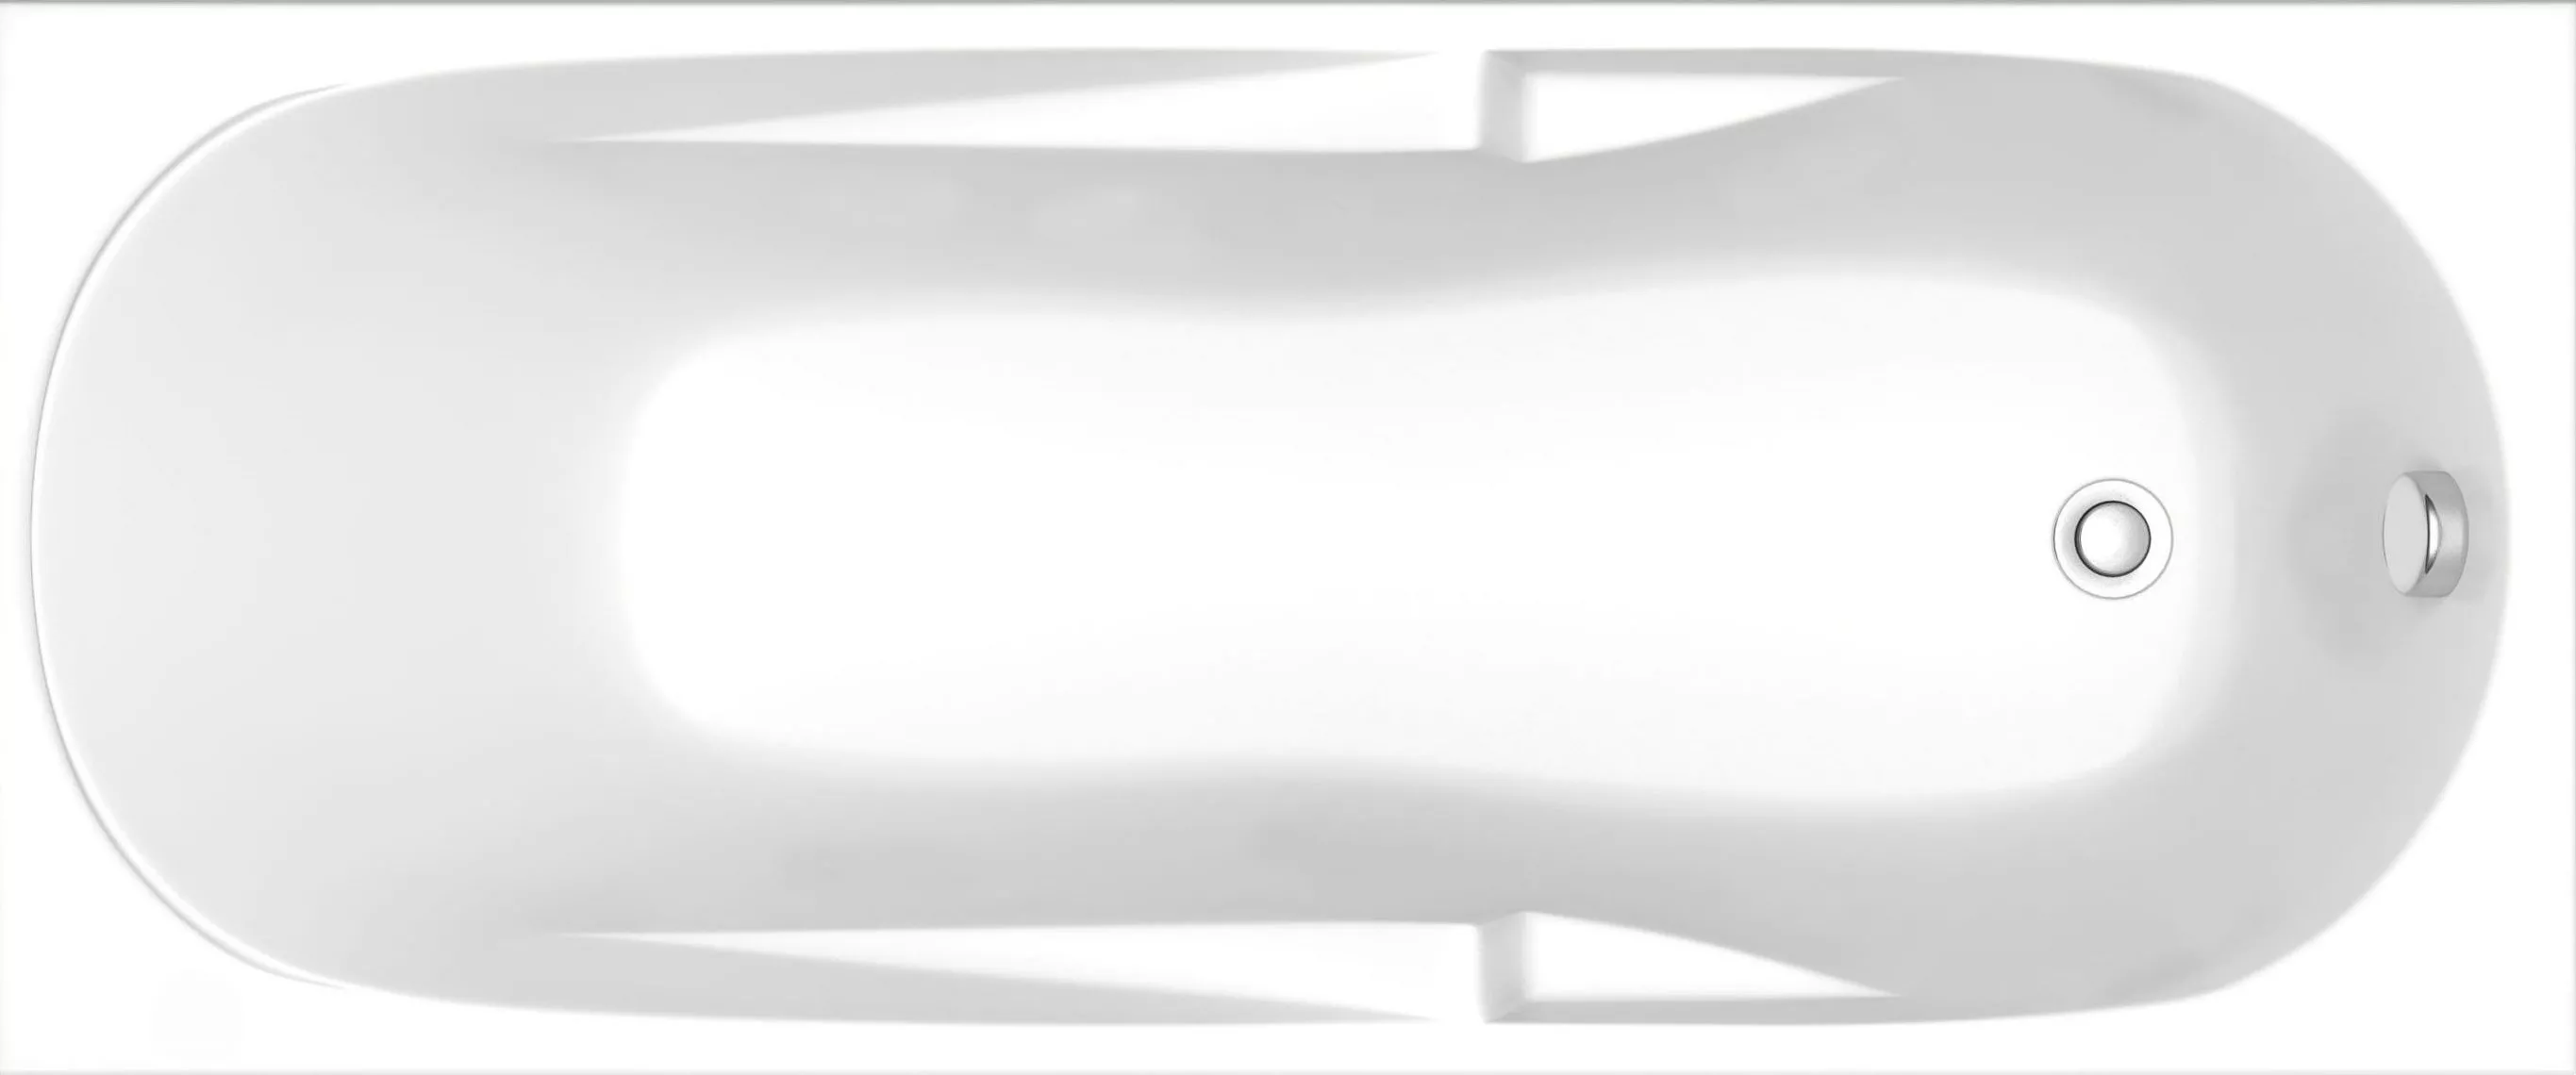 Акриловая ванна Bas Ибица стандарт 150 см на ножках, цвет белый ЗВ00030 - фото 1